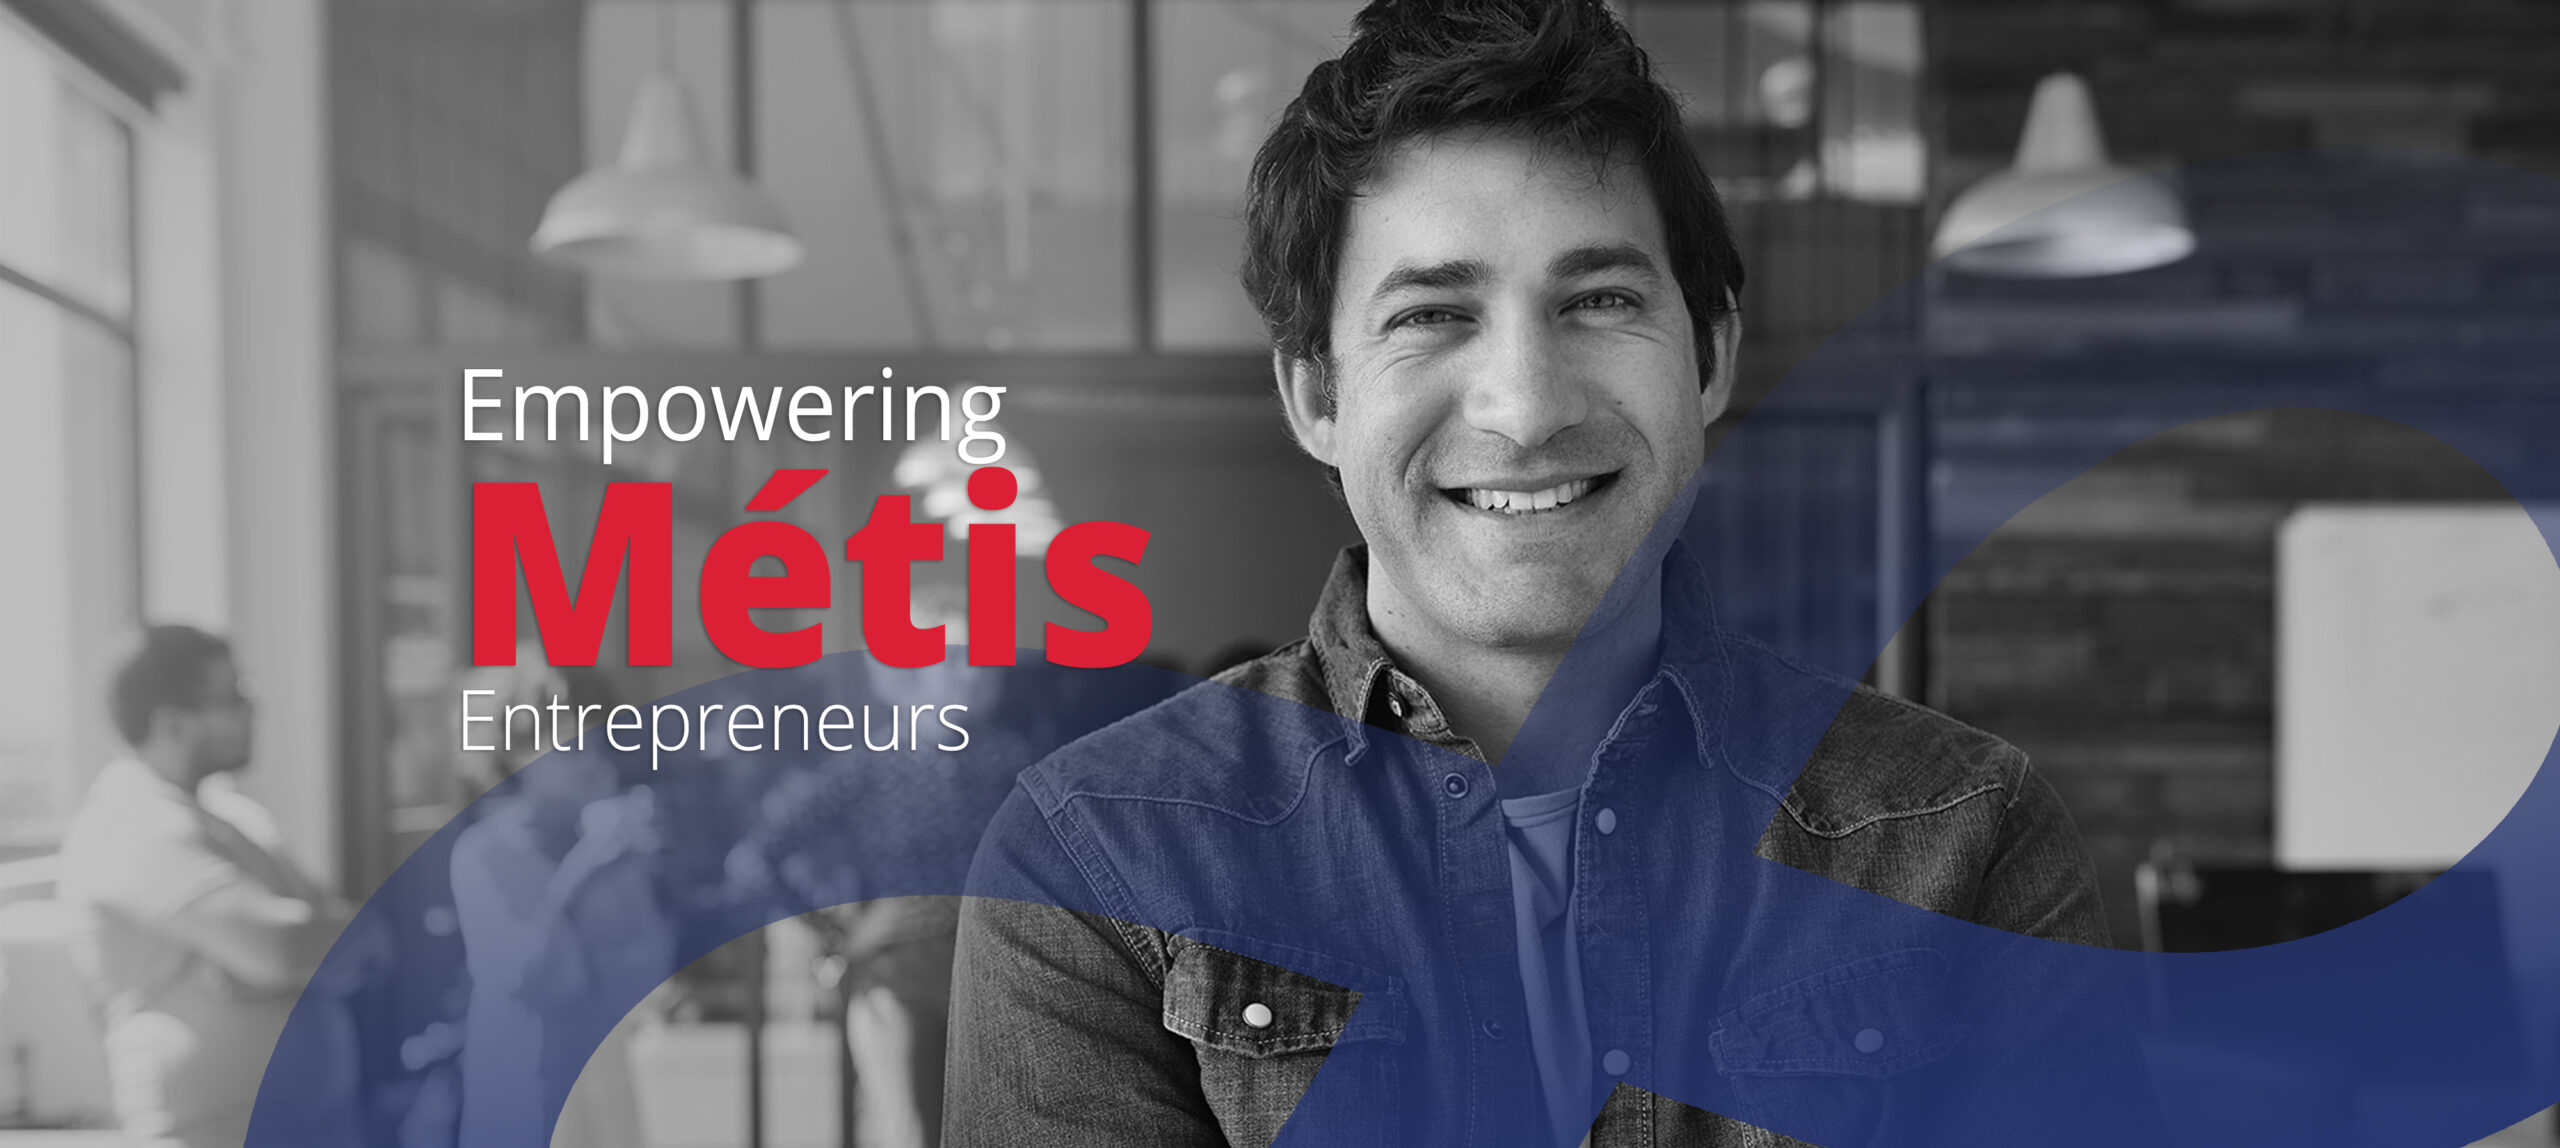 Empowering Metis entrepreneurs